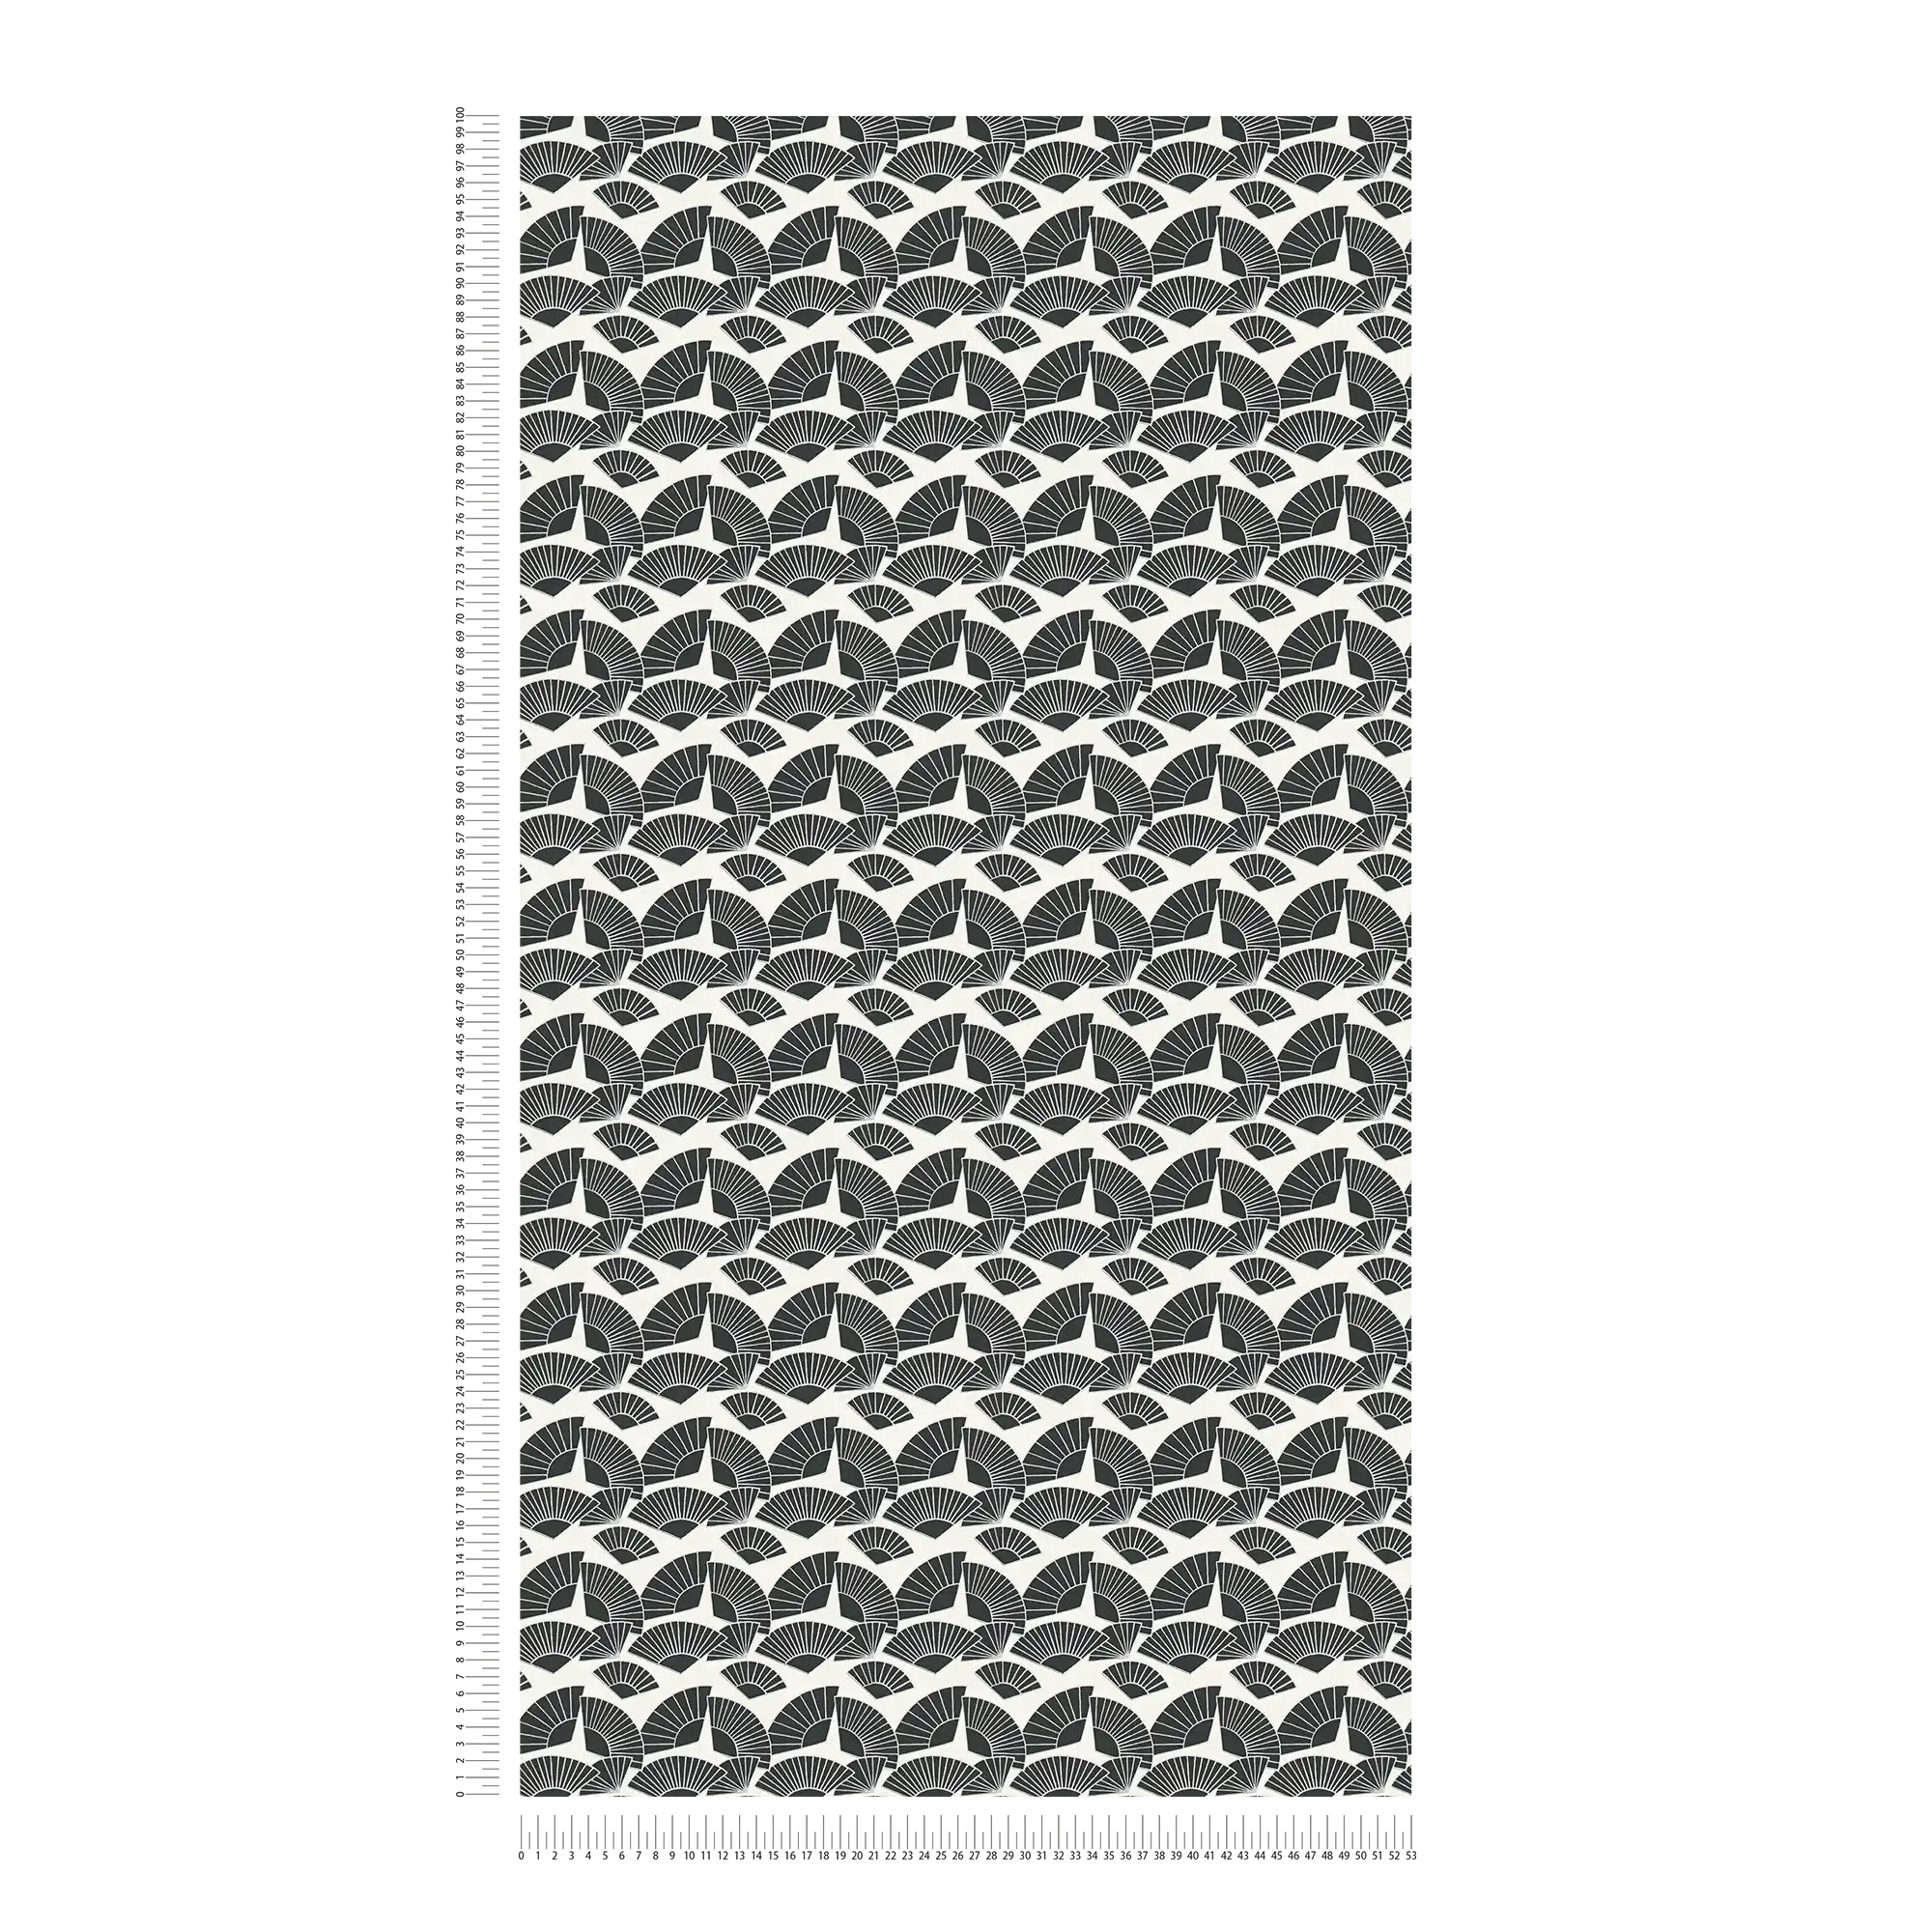             Tapete Karl LAGERFELD Fächer Muster – Metallic, Schwarz, Weiß
        